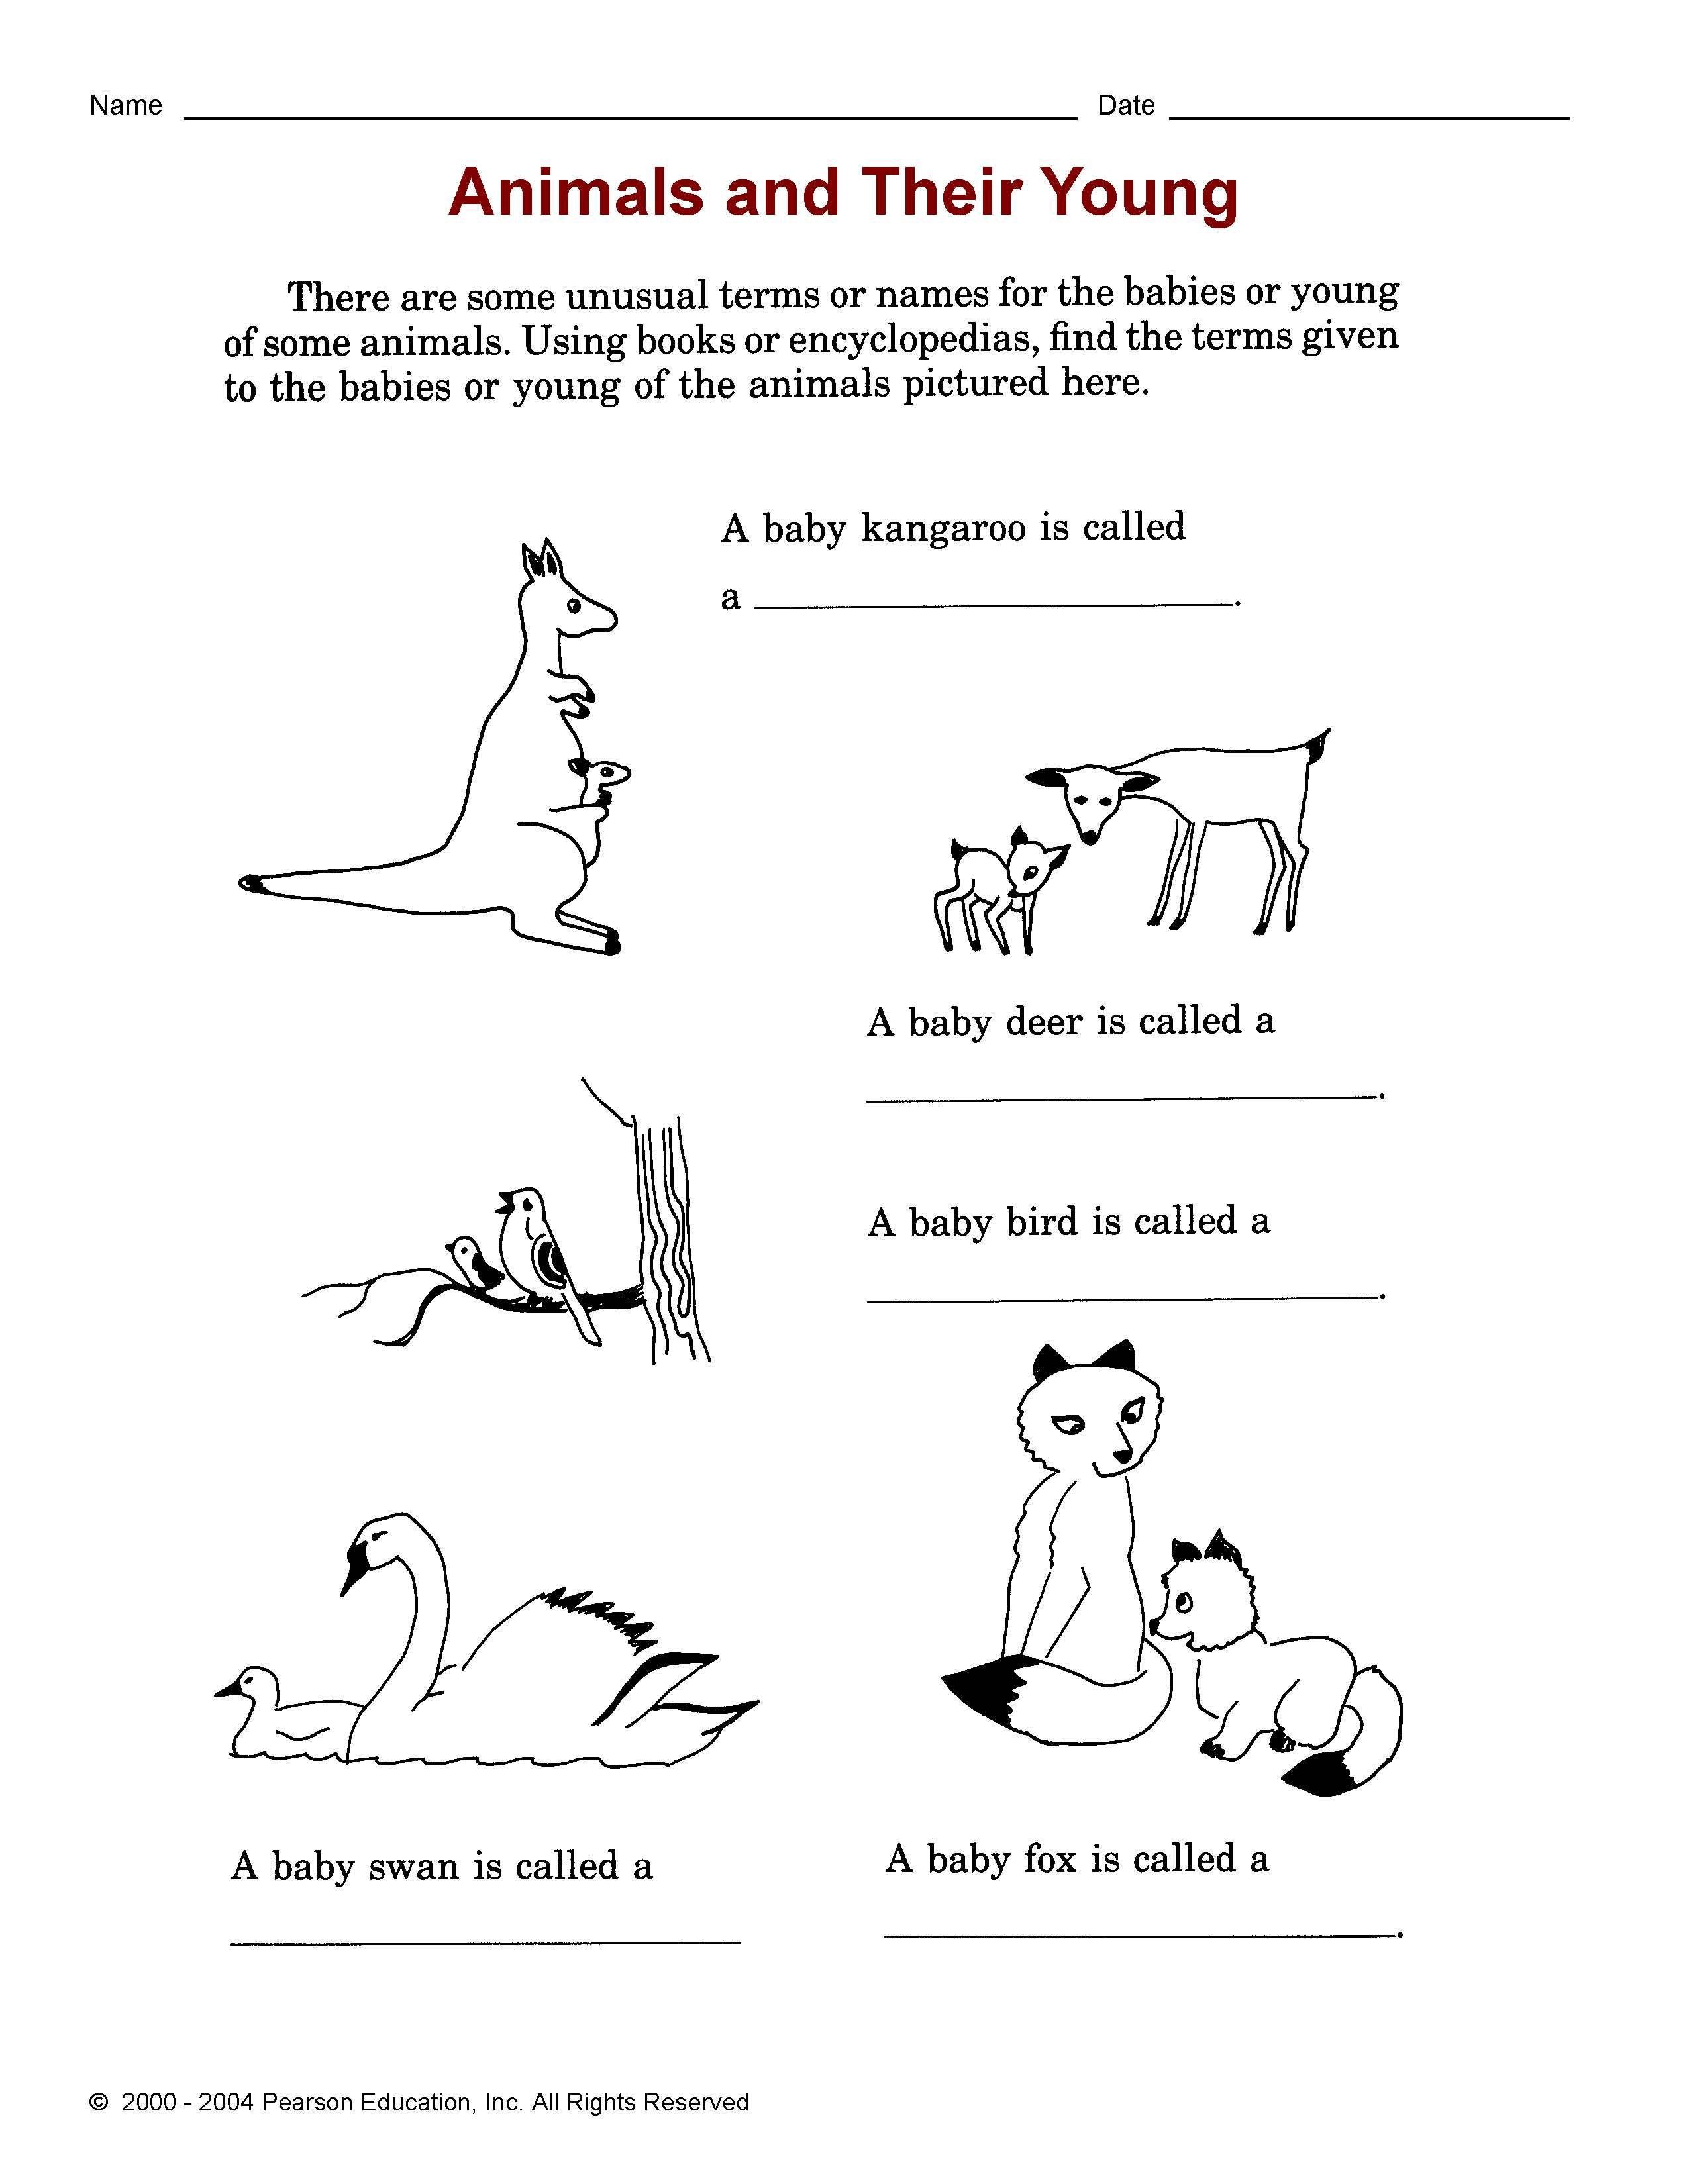 Сочинение на тему домашние животные на английском с переводом 6 класс